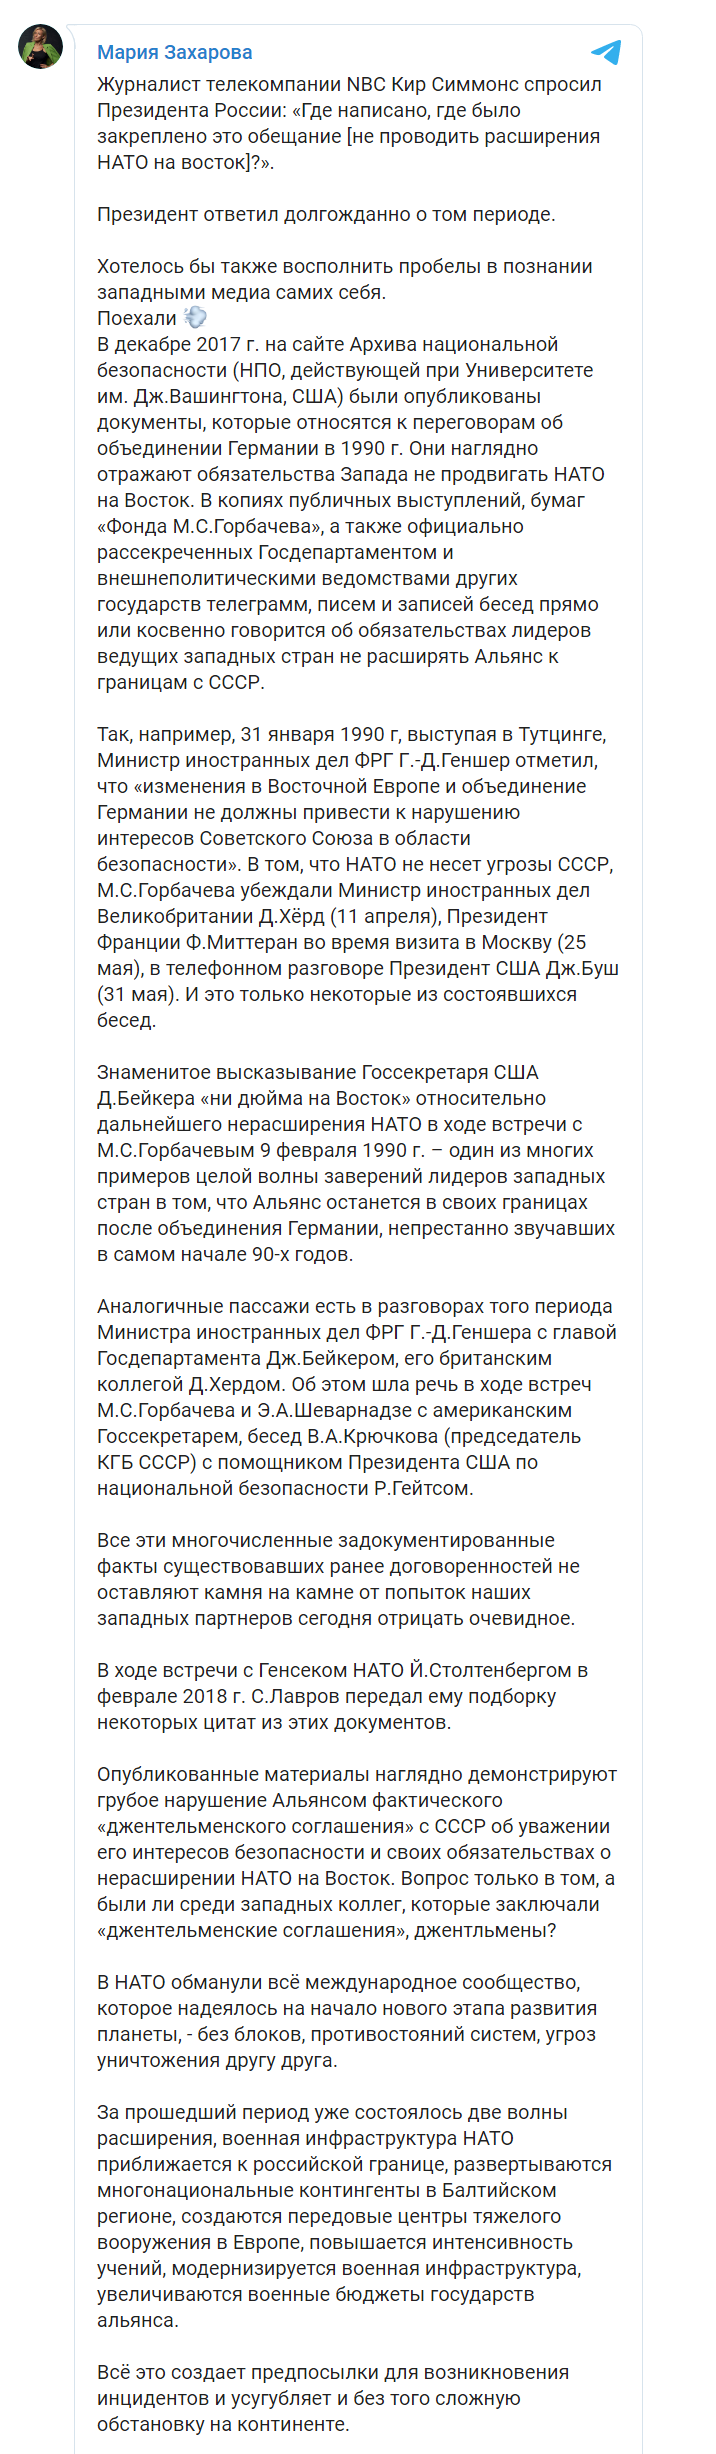 Скриншот из Телеграм Марии Захаровой